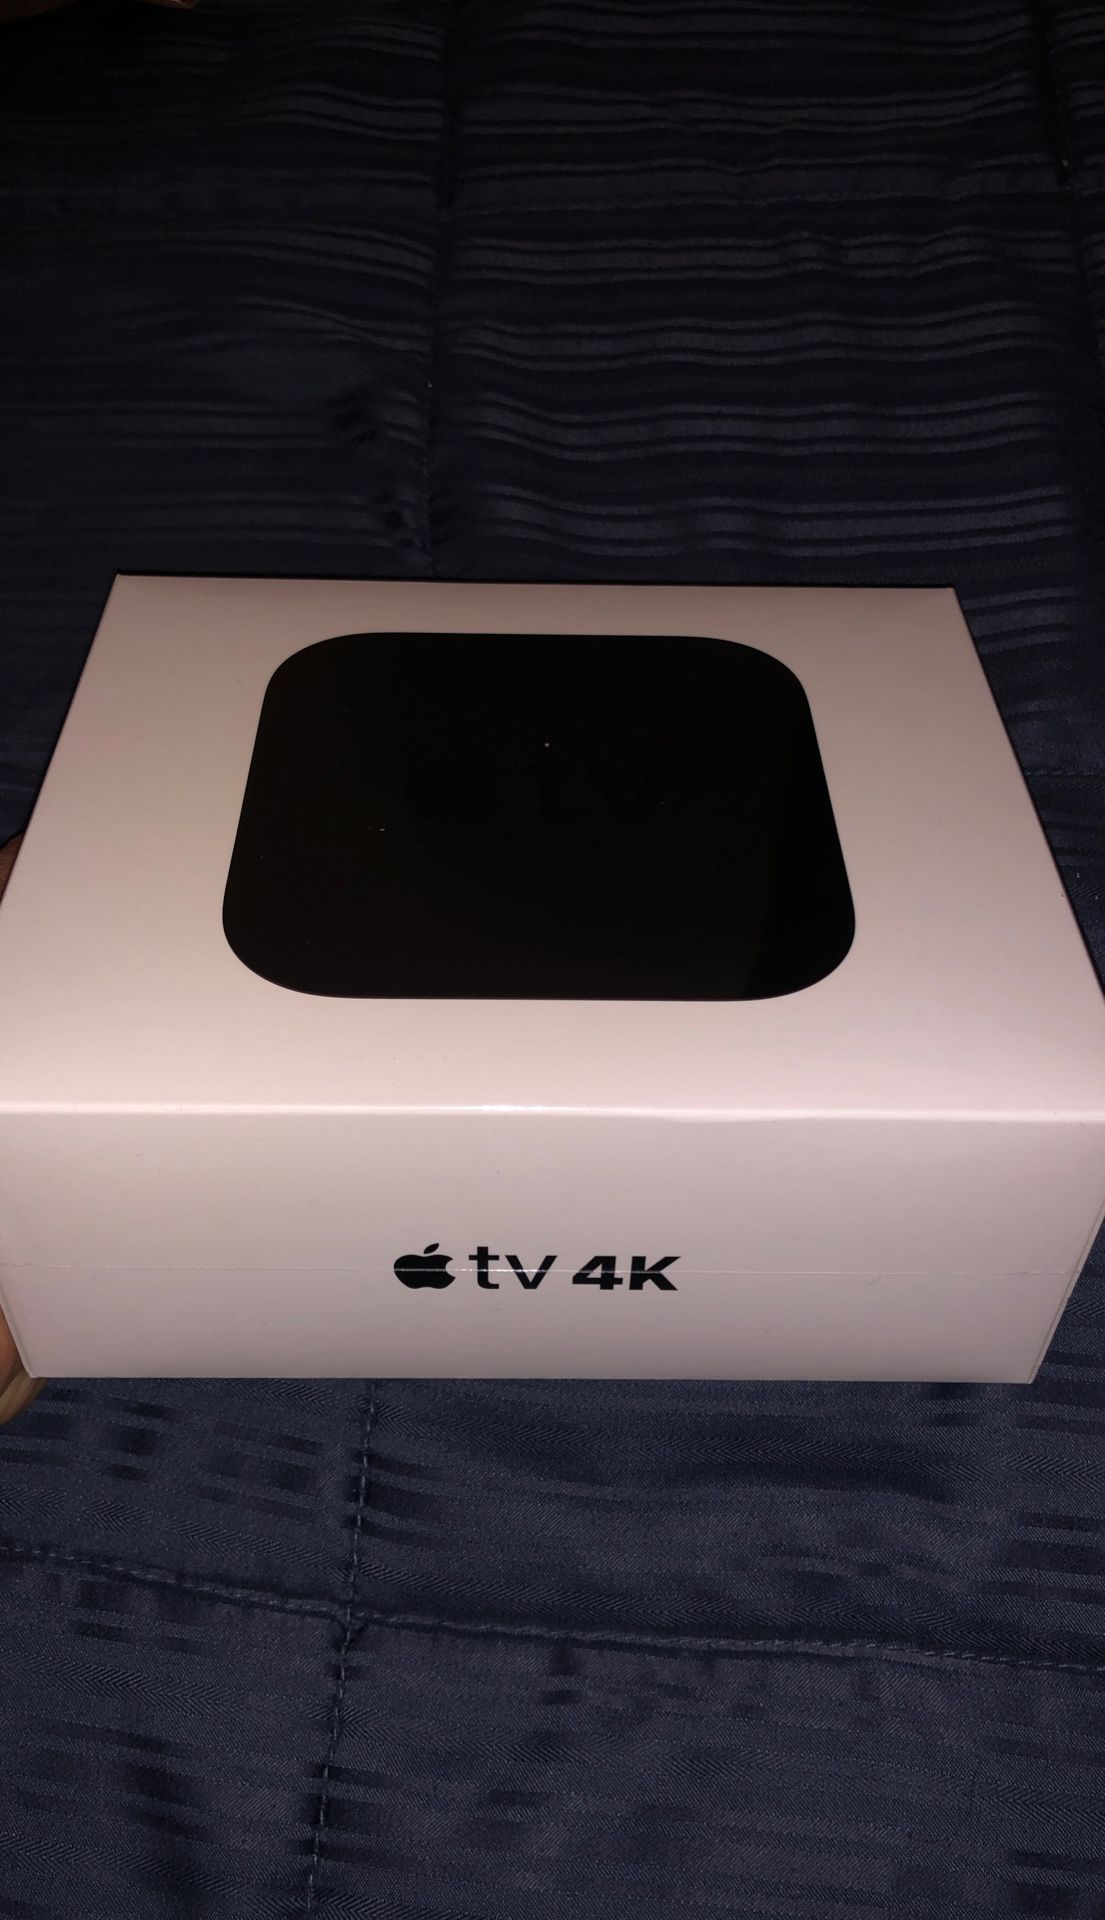 Brand new Apple TV 4K